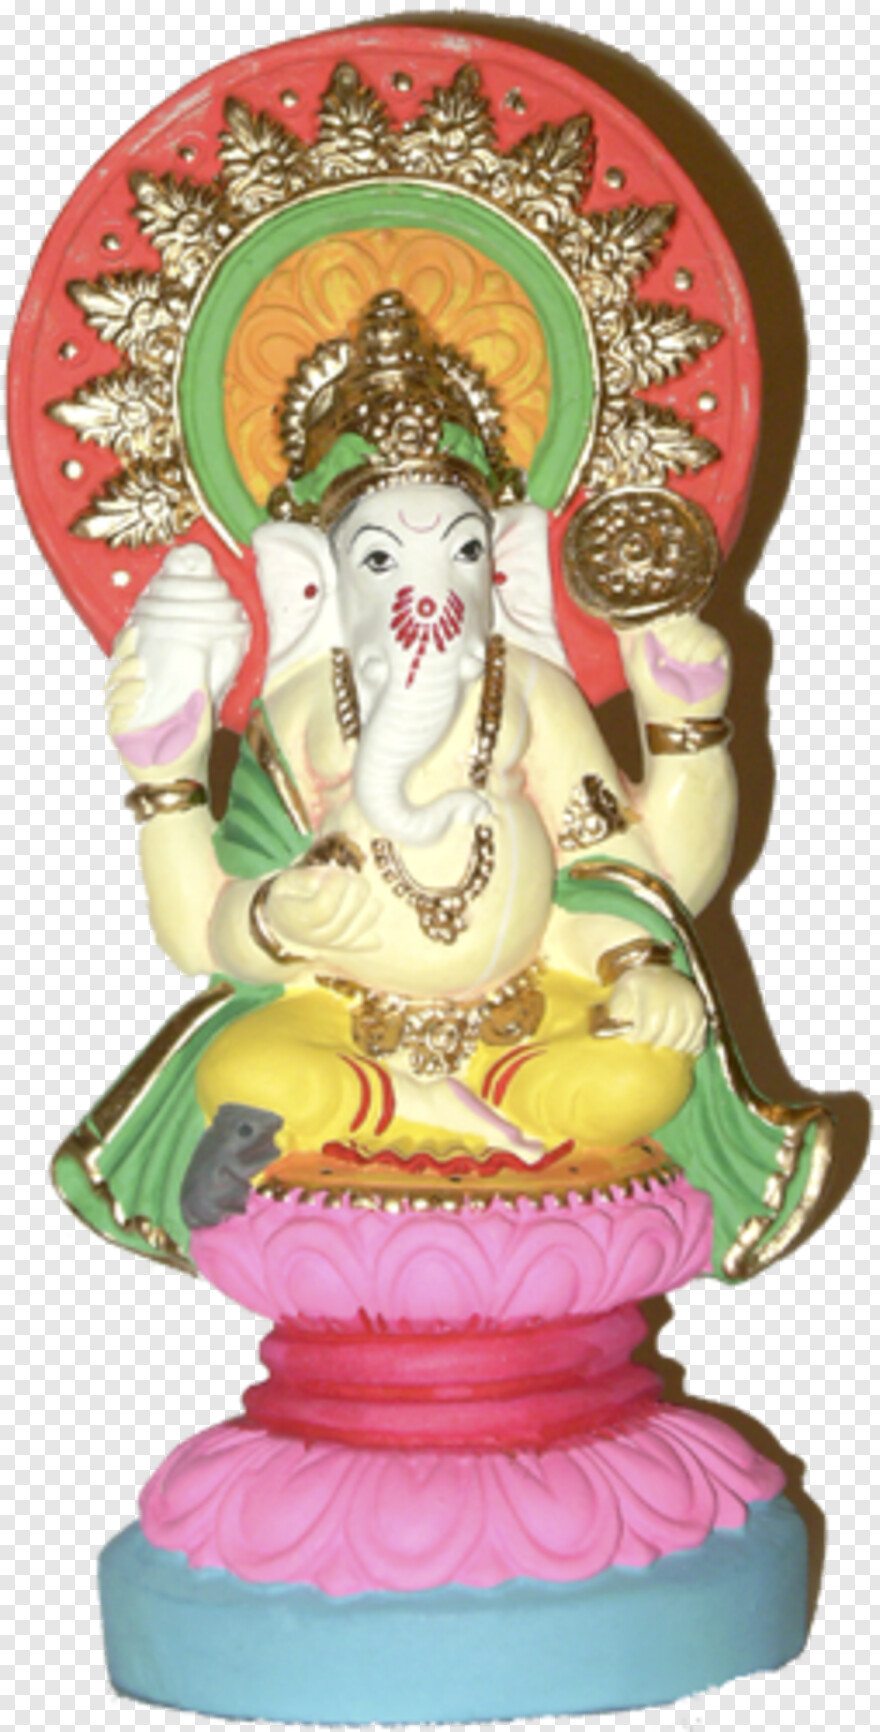  Ganesh Images Hd, Lord Ganesh, Ganesh Clipart, God Ganesh, Ganesh Images, Sri Krishna